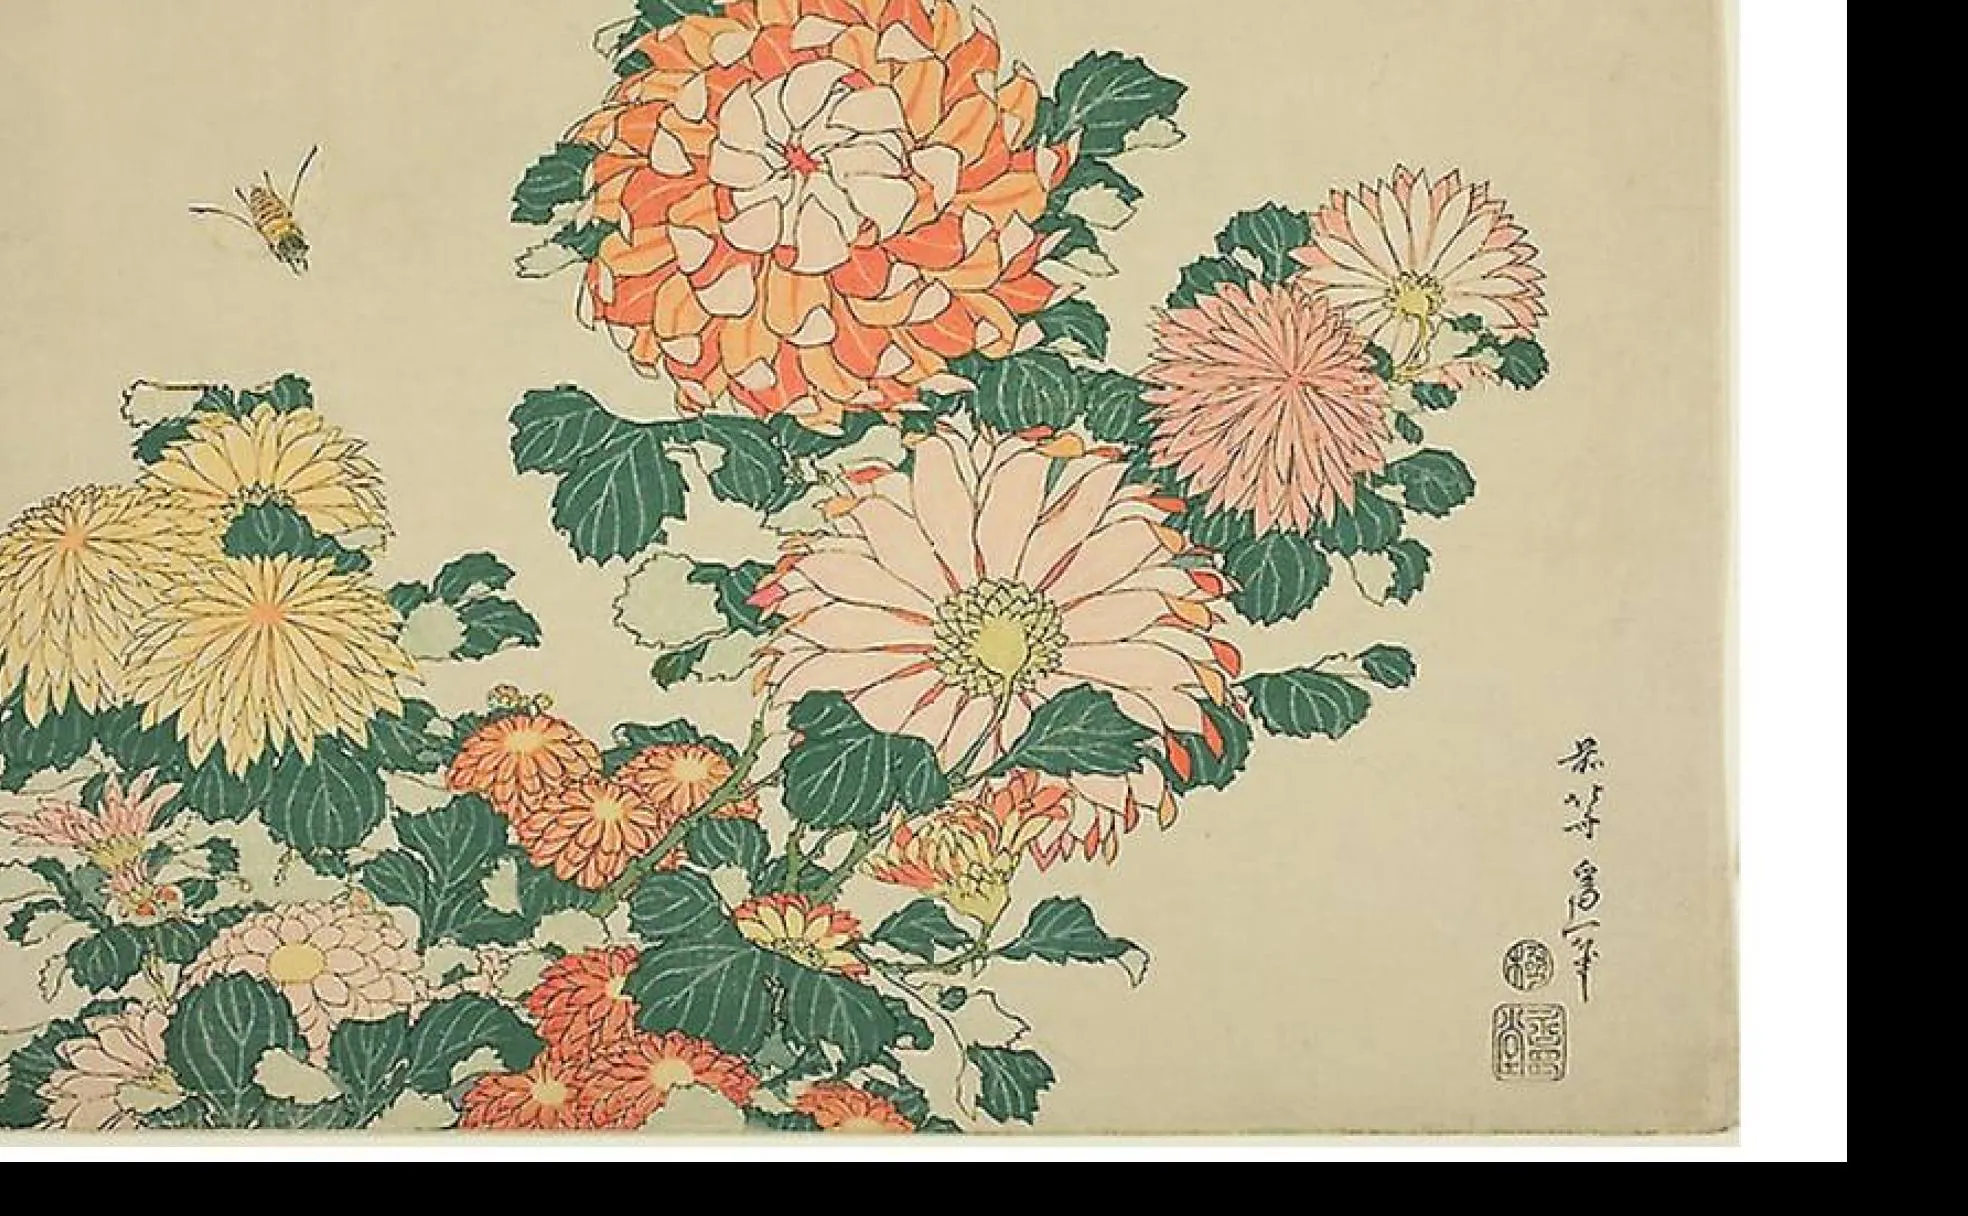 Hokusai (Japón, 1760-1849), autor de la famosa 'La gran ola de Kanagawa', pintó numeroso cuadros con motivos florales, como su 'Crisantemo'.